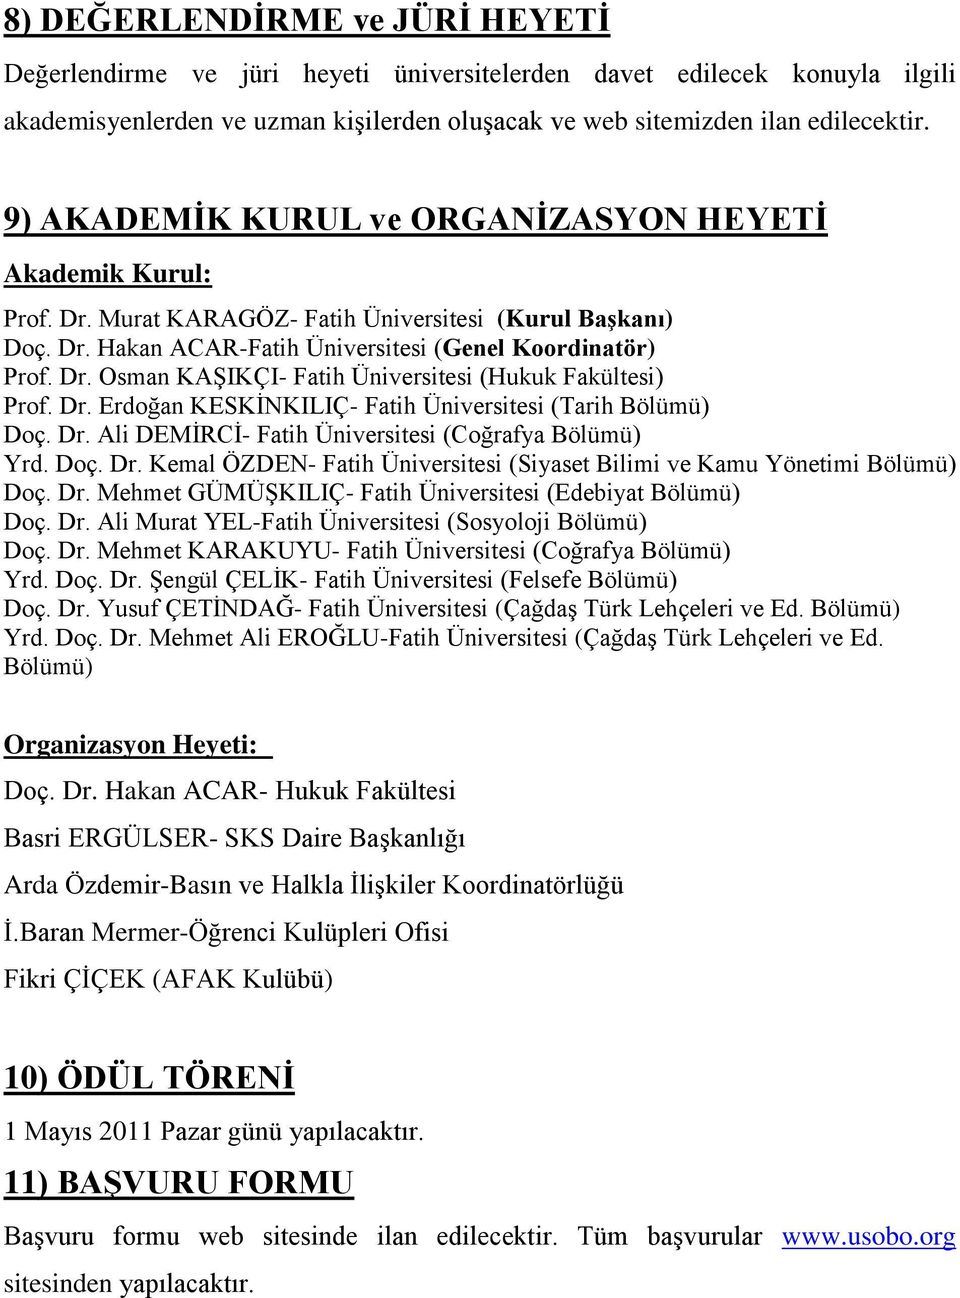 Dr. Erdoğan KESKĠNKILIÇ- Fatih Üniversitesi (Tarih Bölümü) Doç. Dr. Ali DEMĠRCĠ- Fatih Üniversitesi (Coğrafya Bölümü) Yrd. Doç. Dr. Kemal ÖZDEN- Fatih Üniversitesi (Siyaset Bilimi ve Kamu Yönetimi Bölümü) Doç.